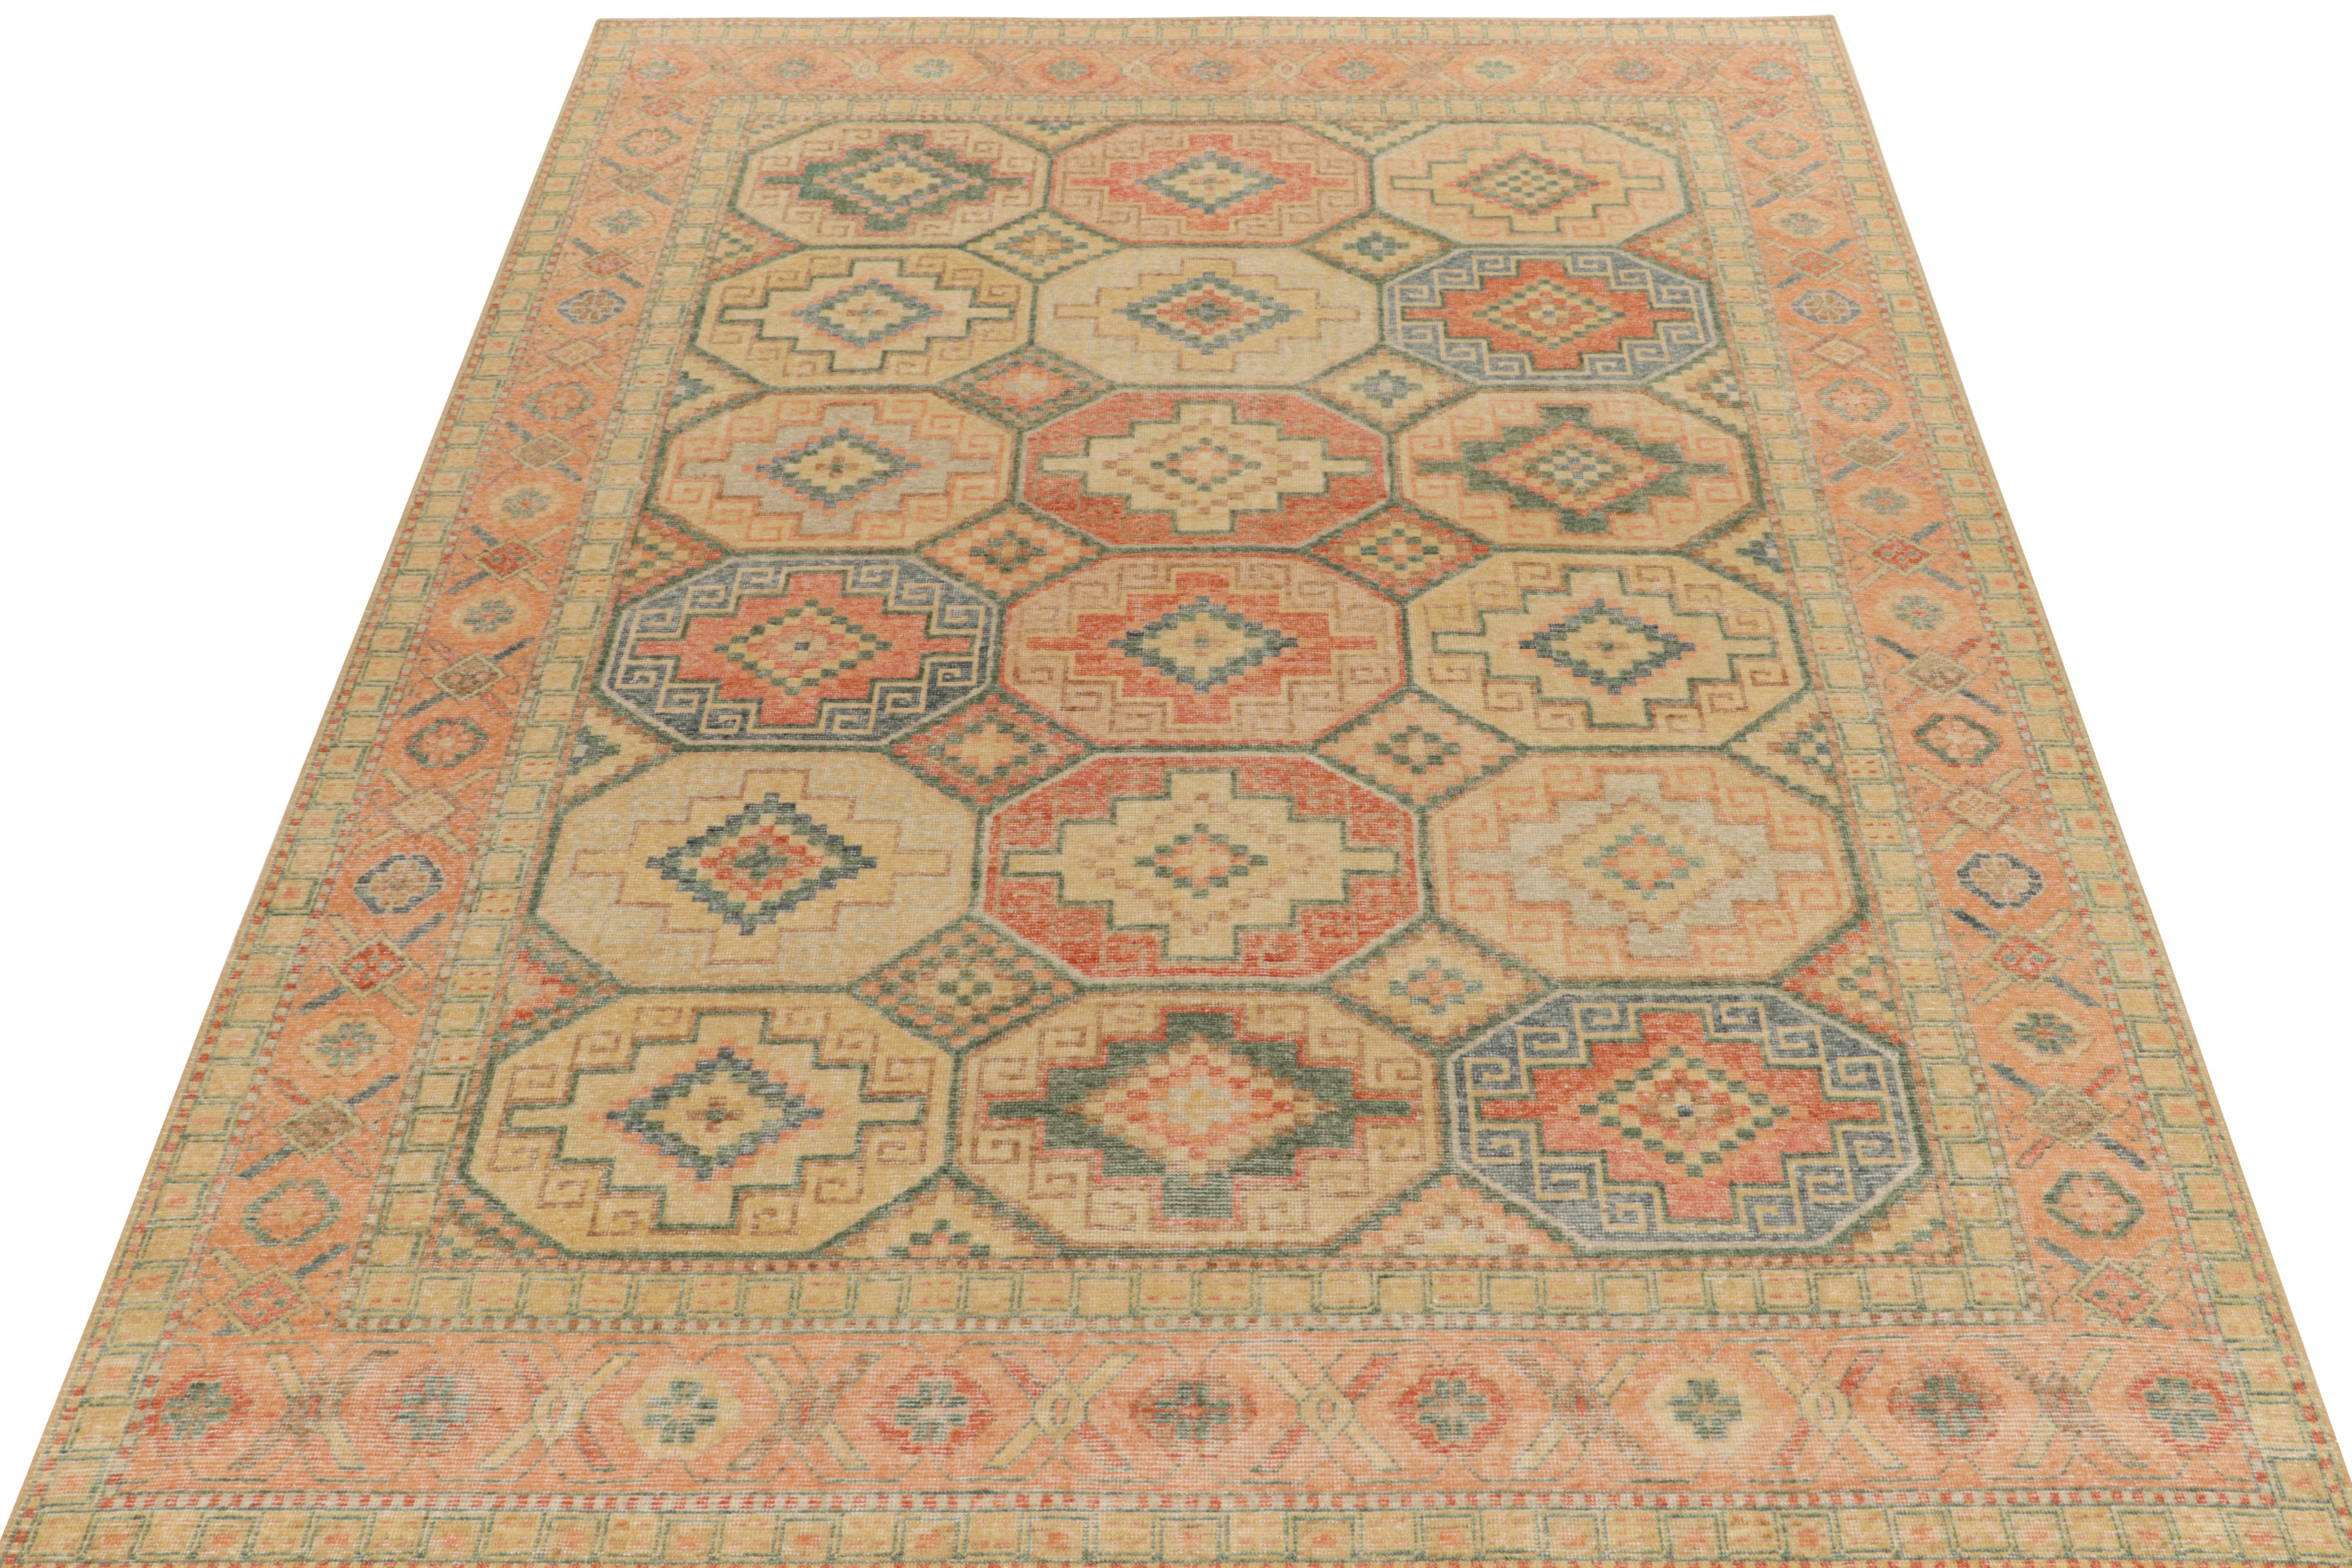 Ce tapis 9x12 de style vieilli de la collection Homage de Rug & Kilim s'inspire d'un motif géométrique tribal dans des tons mandarine, bleu et beige. Les connaisseurs pourront noter les motifs traditionnels qui décorent les bordures dans des coloris